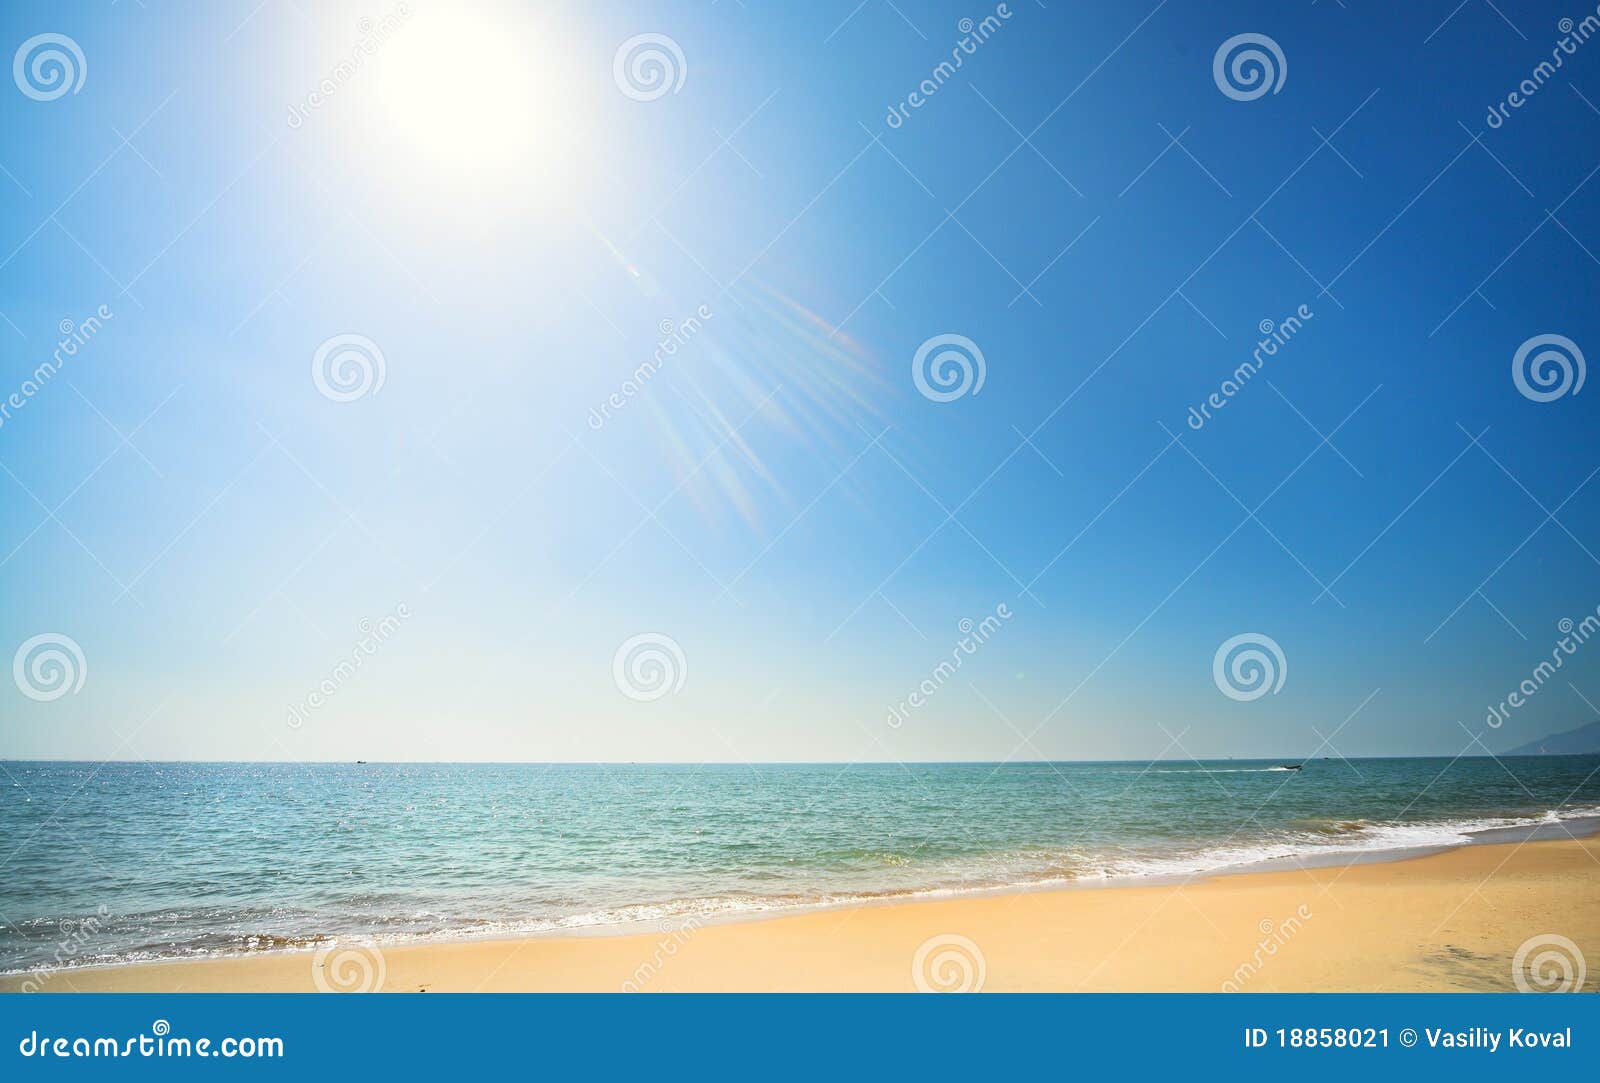 sunny beach